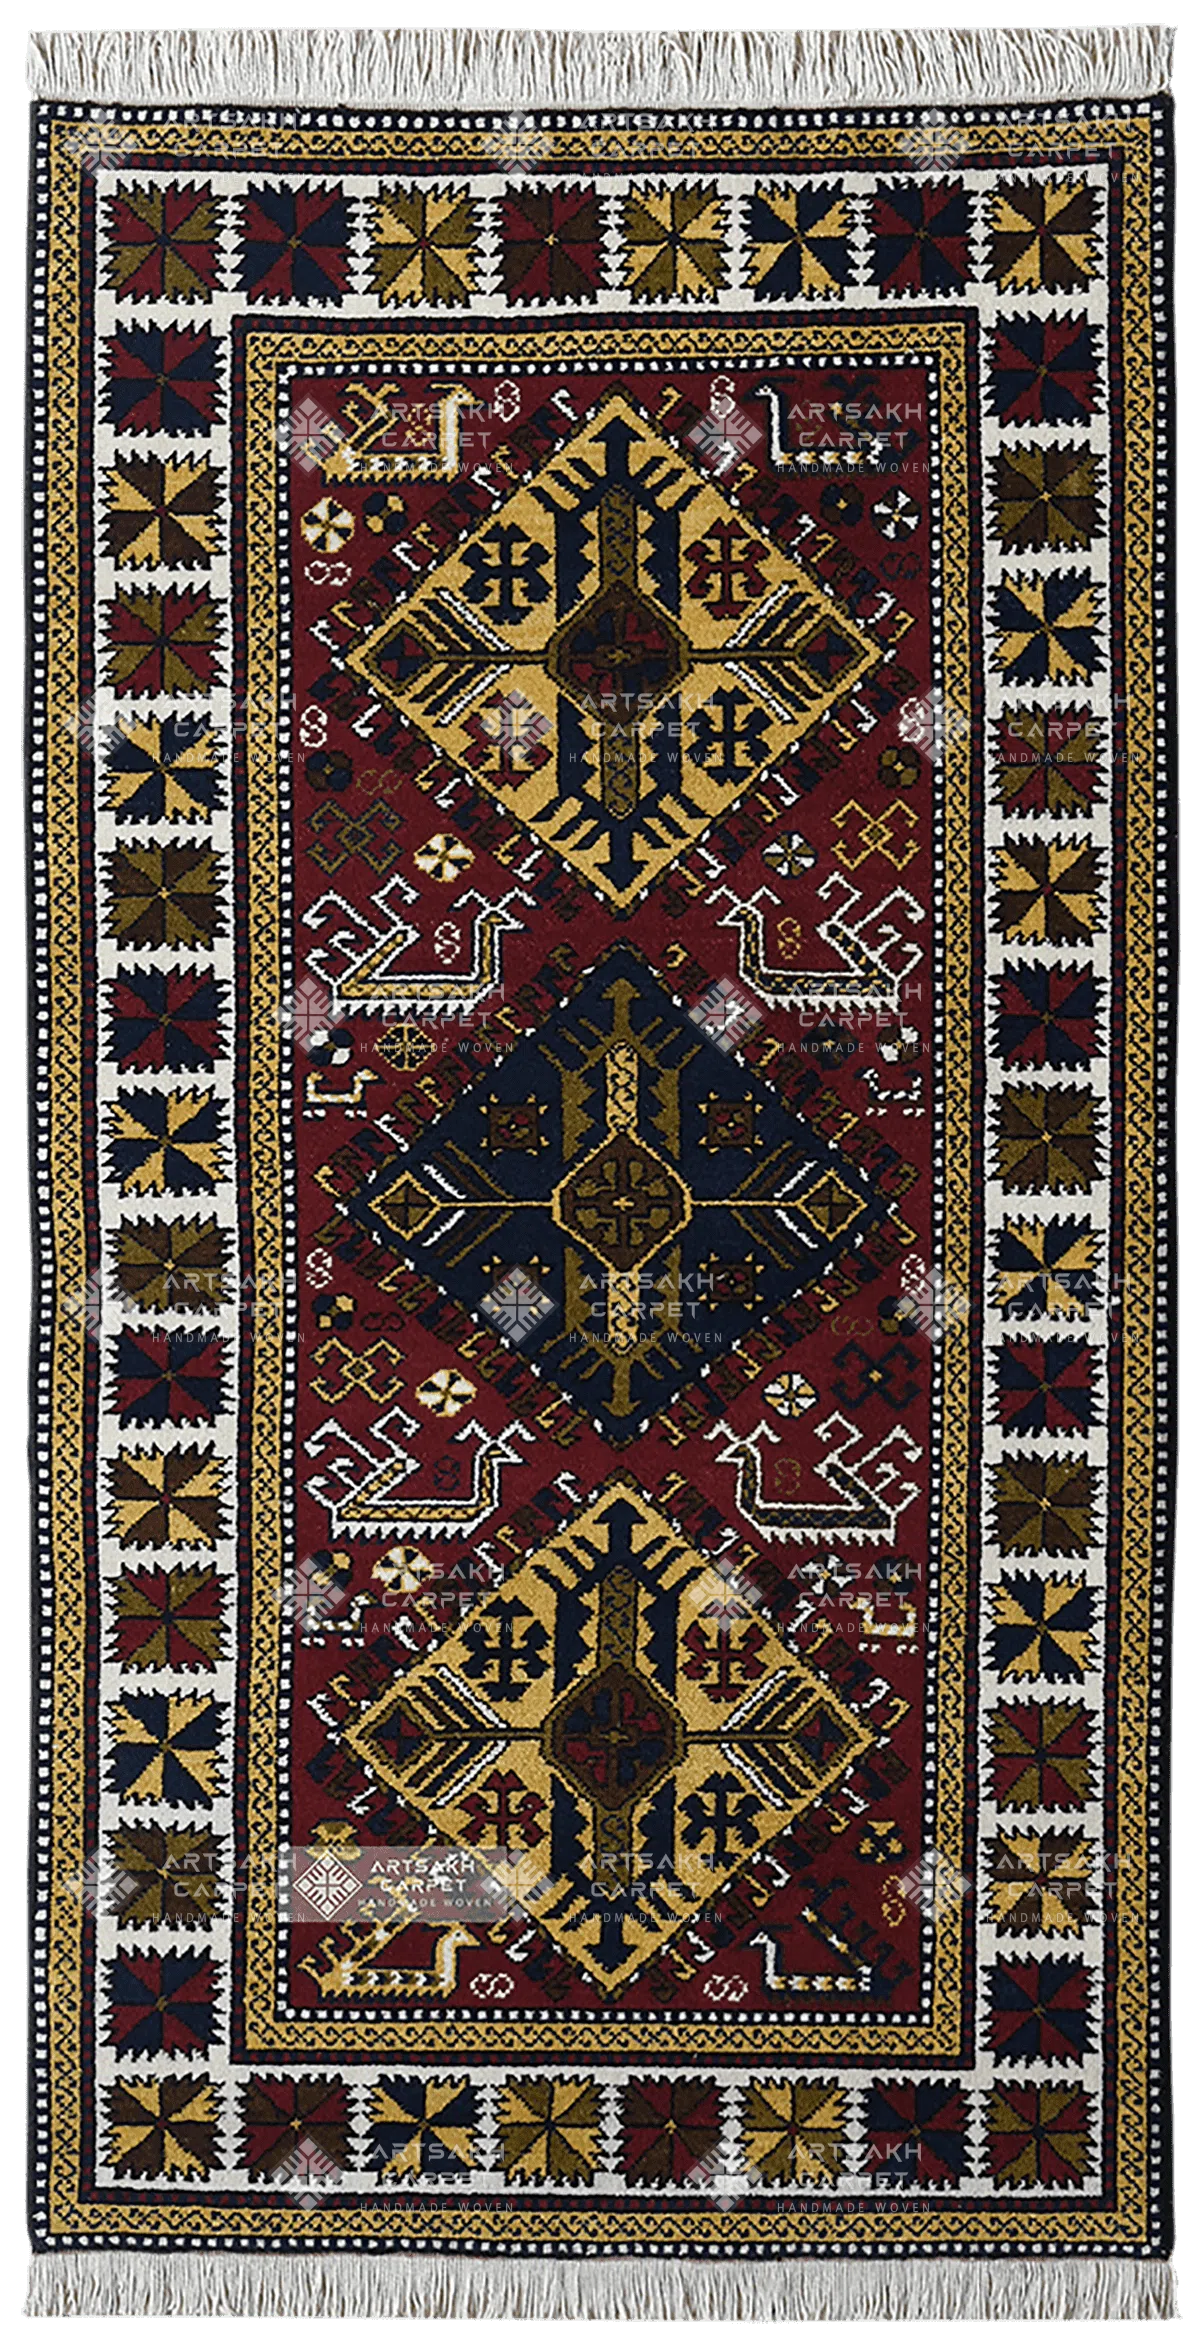 Традиционный армянский ковер Ковер  Астгавк